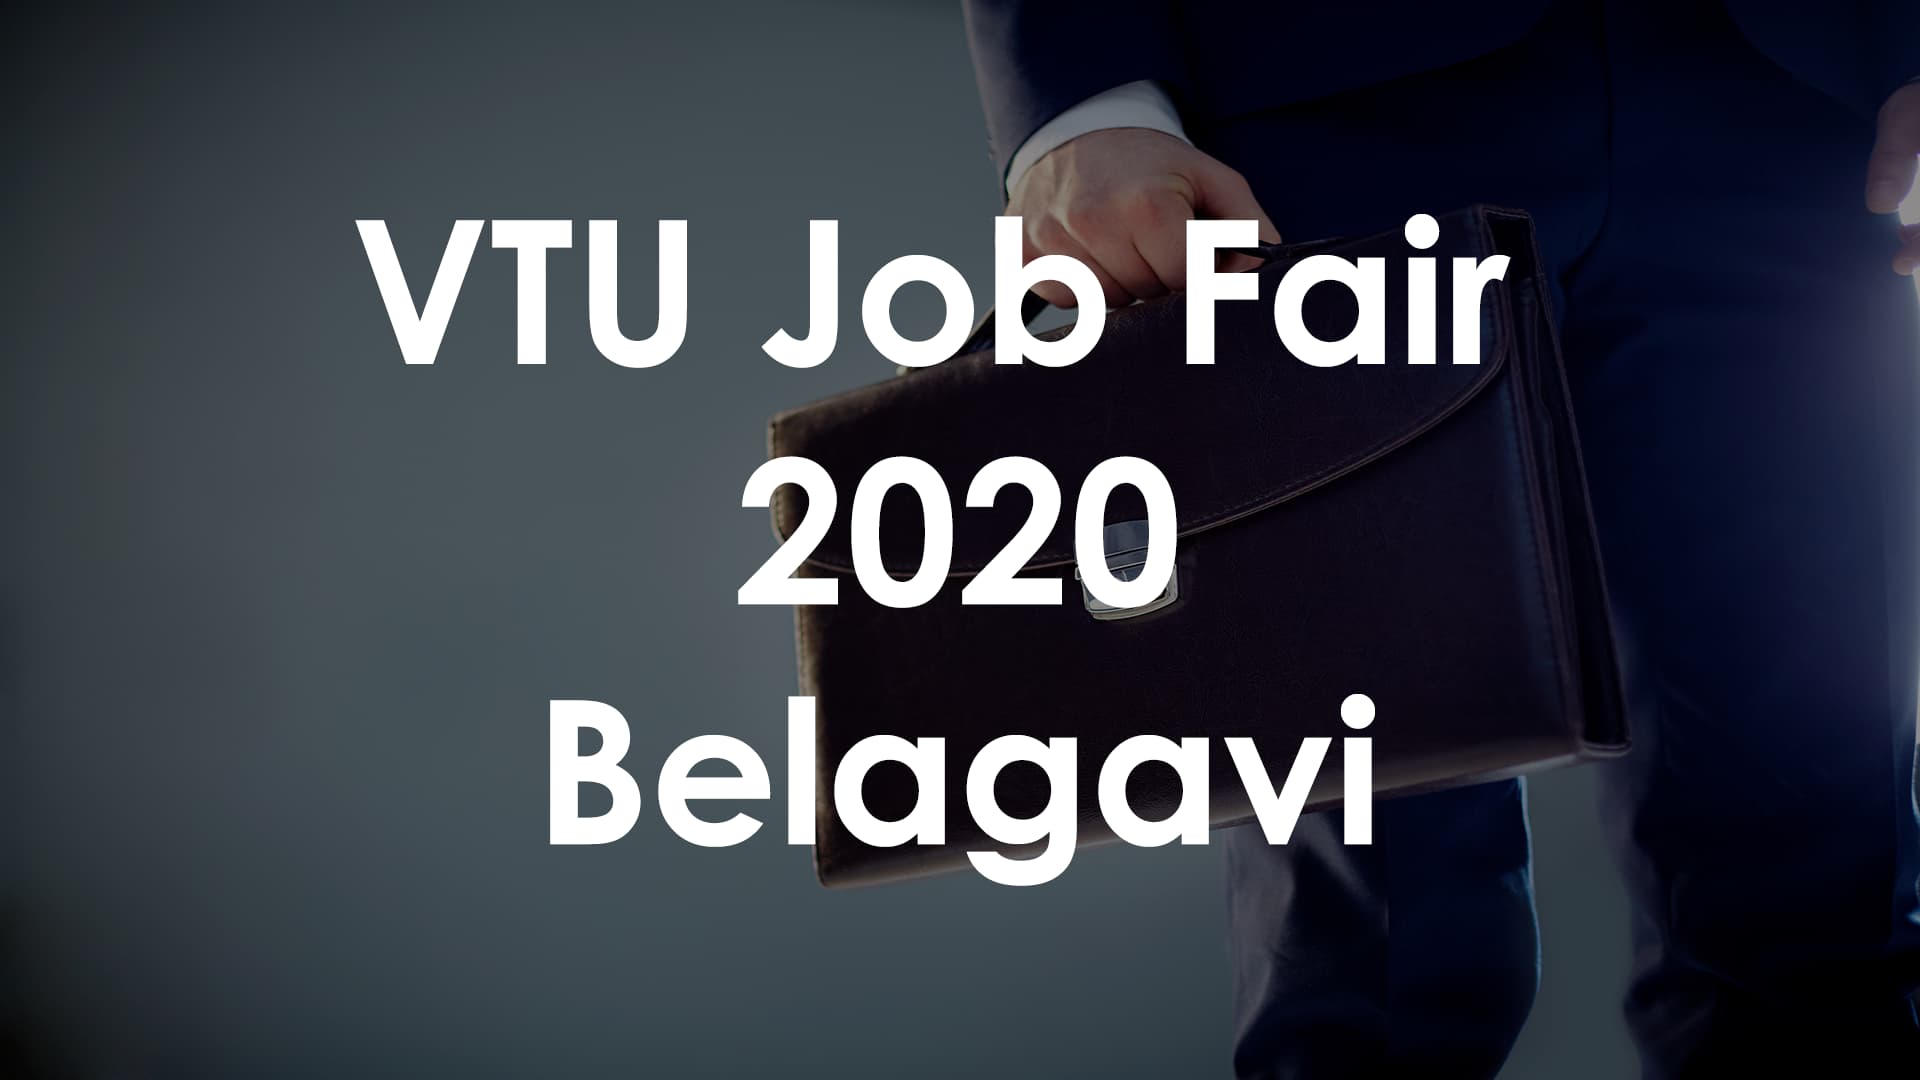 VTU Job Fair 2020